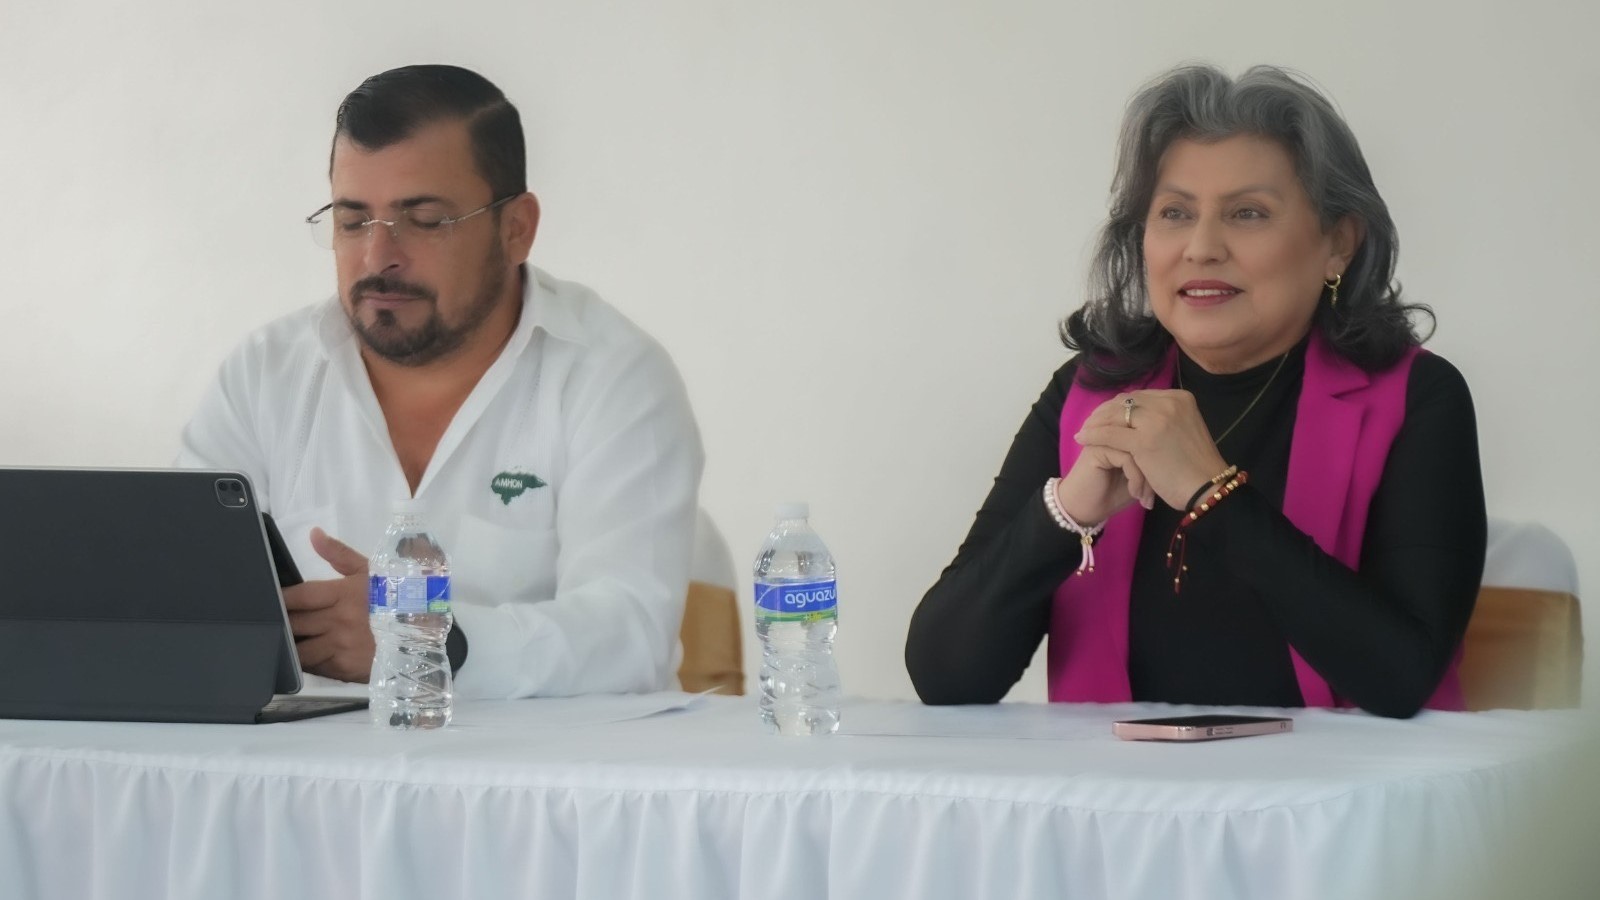 Tomás Vaquero: “Vamos a construir el desarrollo nacional a través de la unidad de los municipios, sin ver sectarismos políticos”